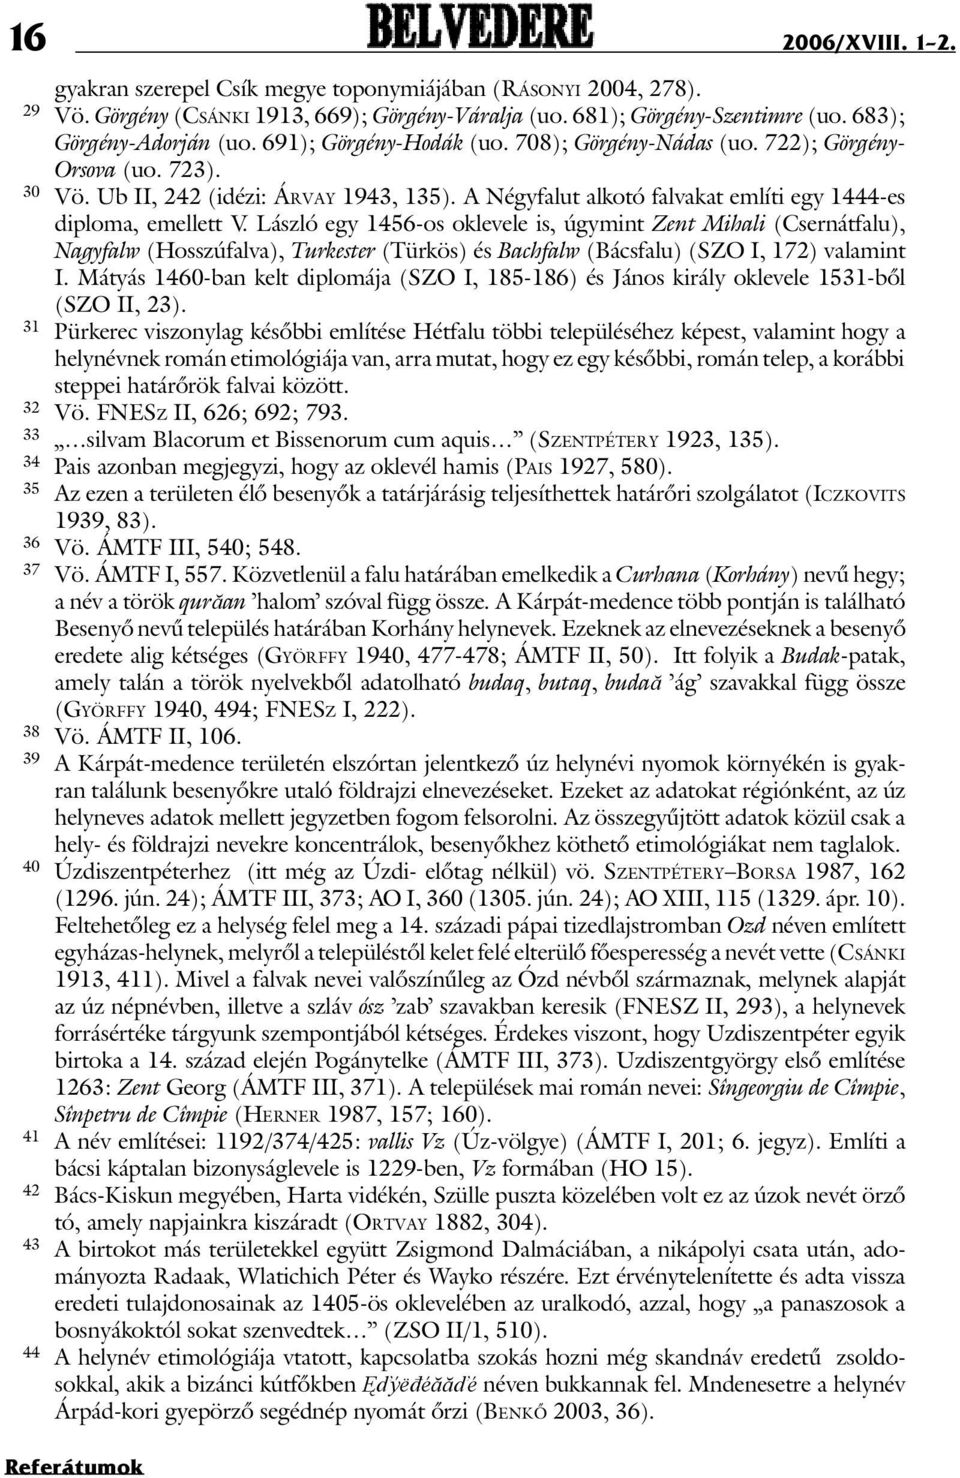 László egy 1456-os oklevele is, úgymint Zent Mihali (Csernátfalu), Nagyfalw (Hosszúfalva), Turkester (Türkös) és Bachfalw (Bácsfalu) (SZO I, 172) valamint I.